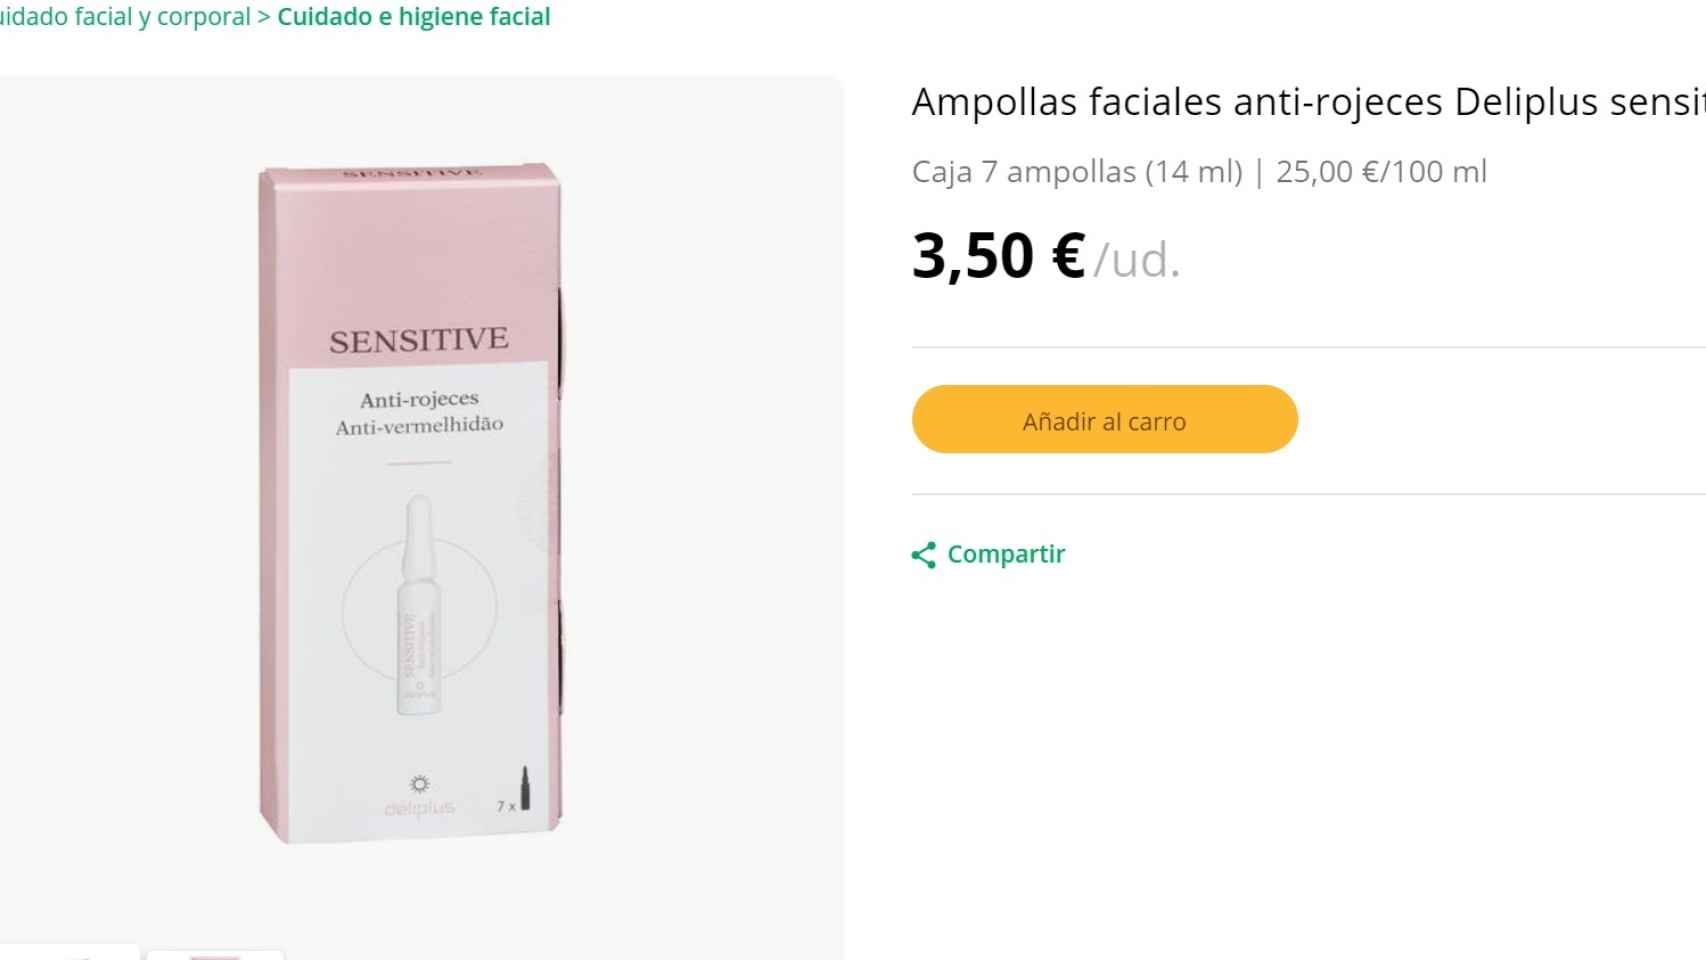 El producto tiene un precio de 3,50 euros.